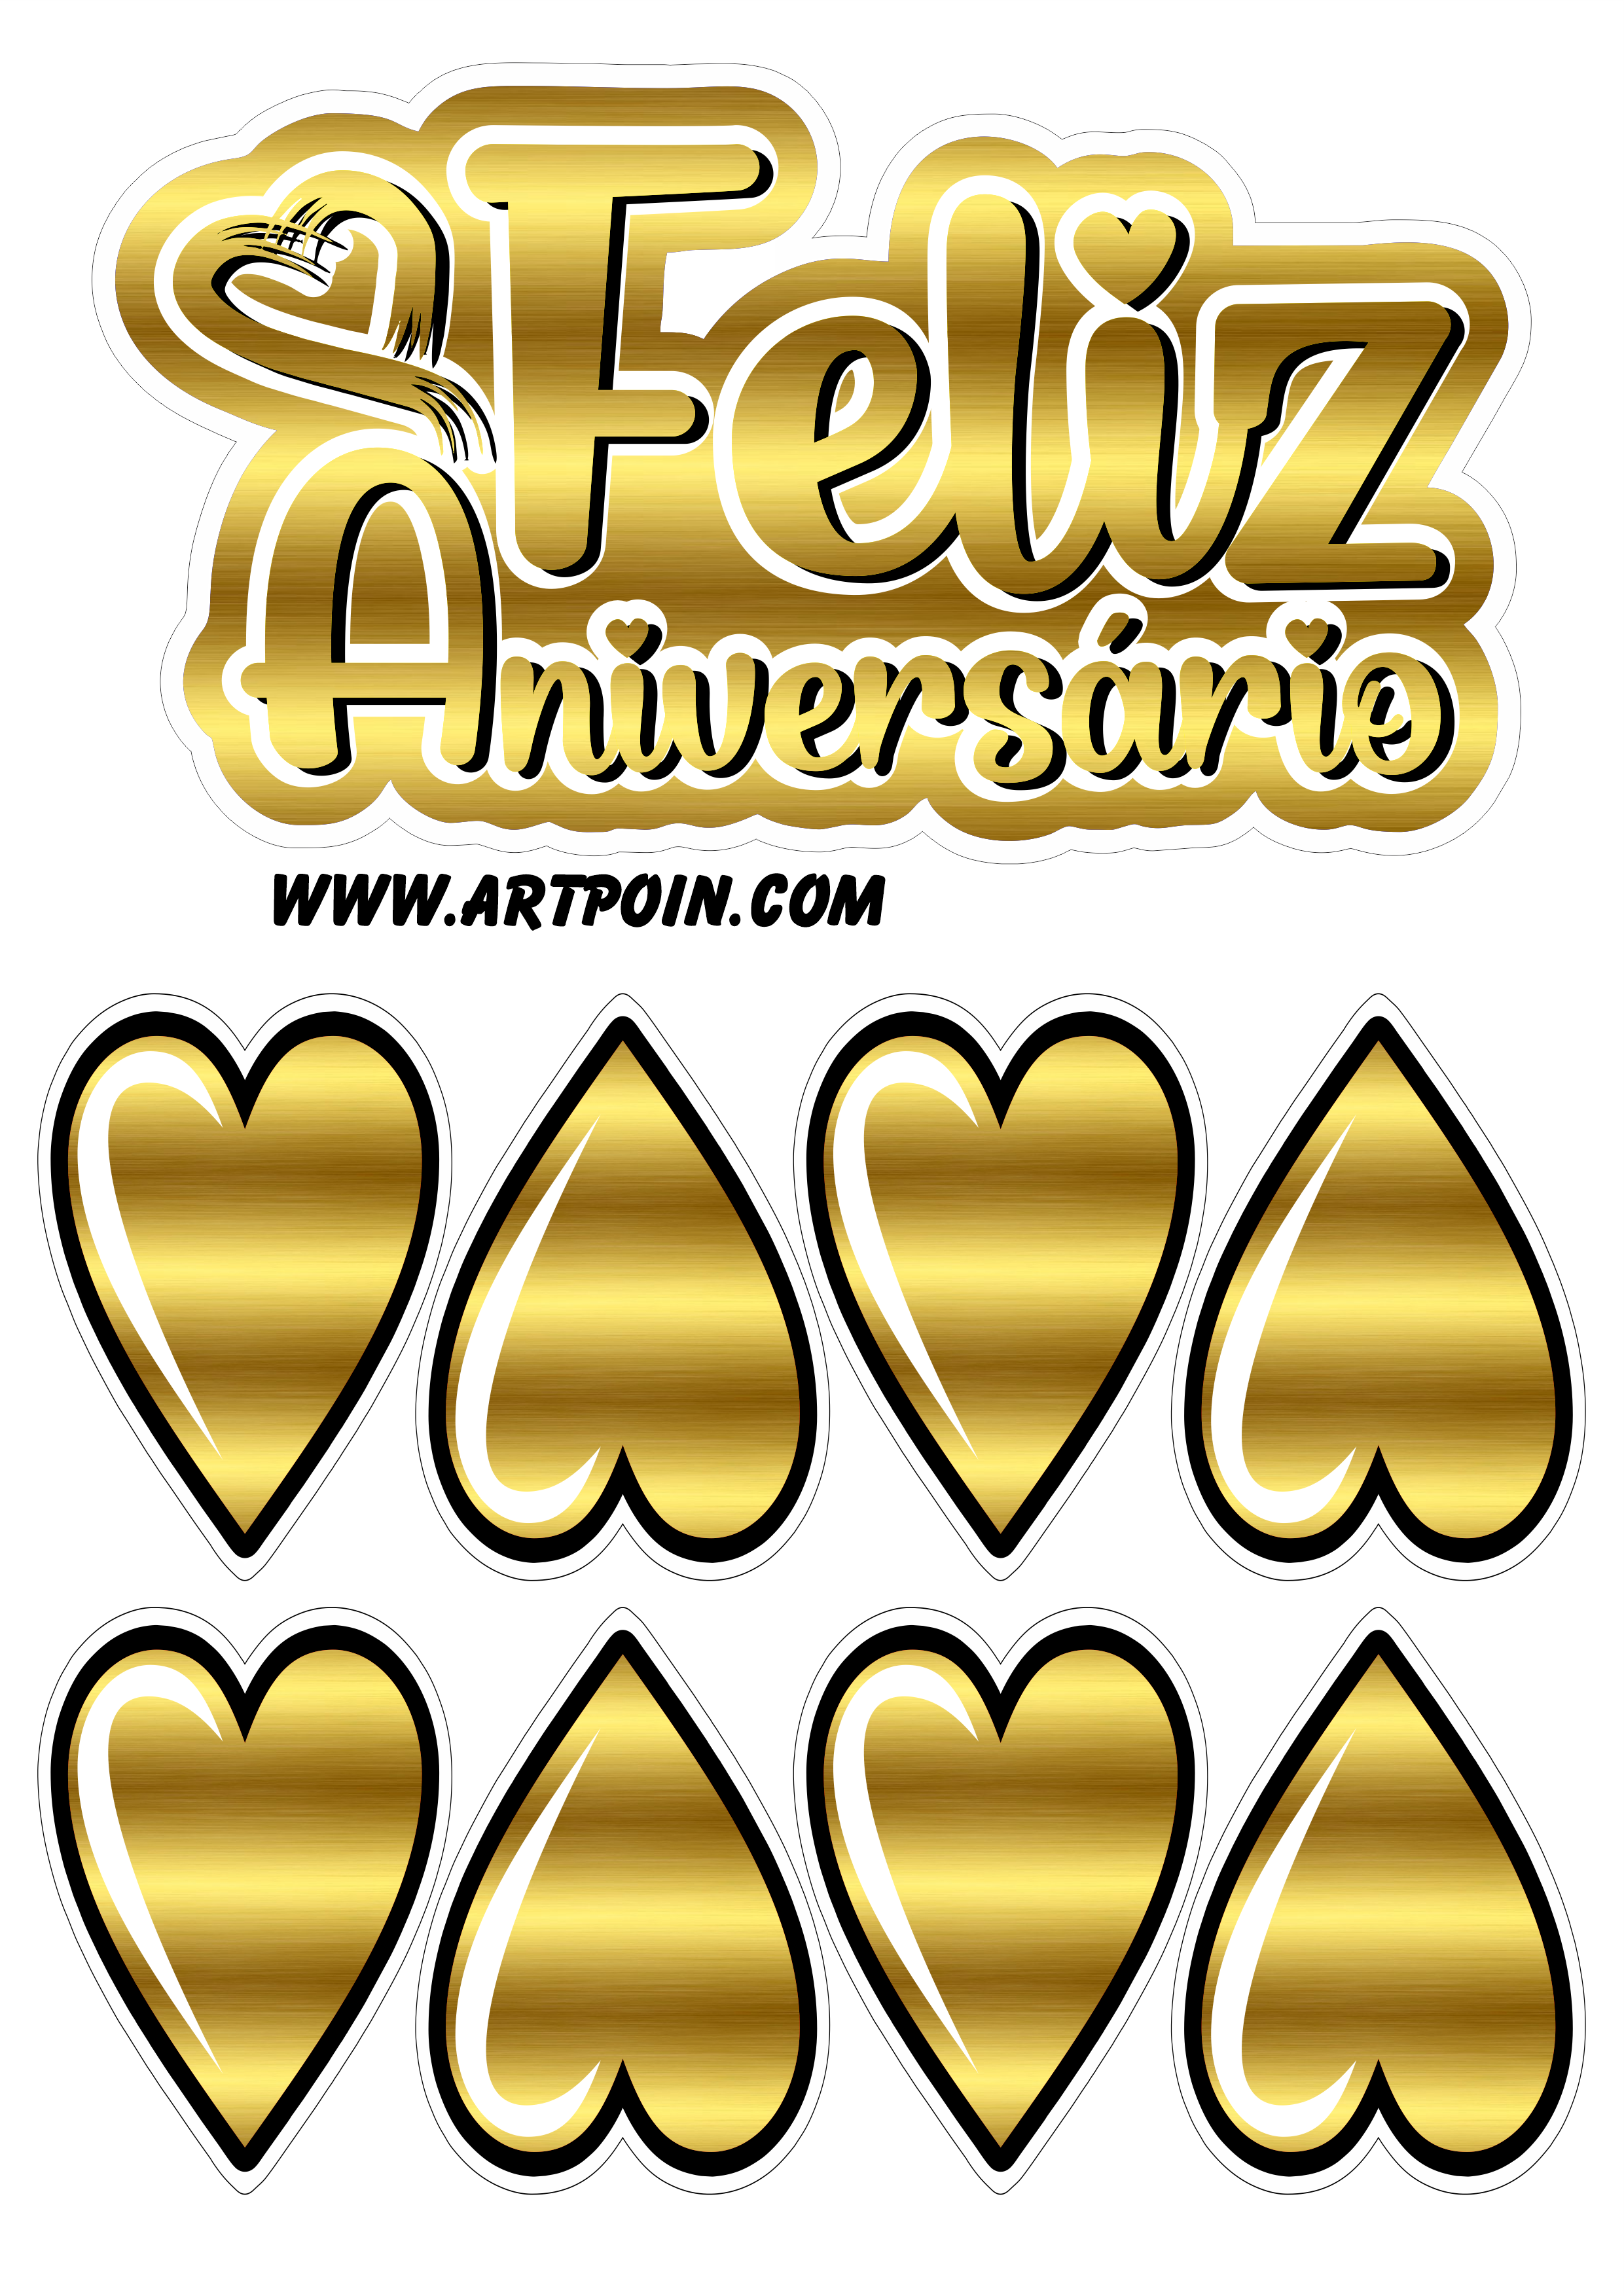 Topo de bolo dourado com corações feliz aniversário decoração de festa png